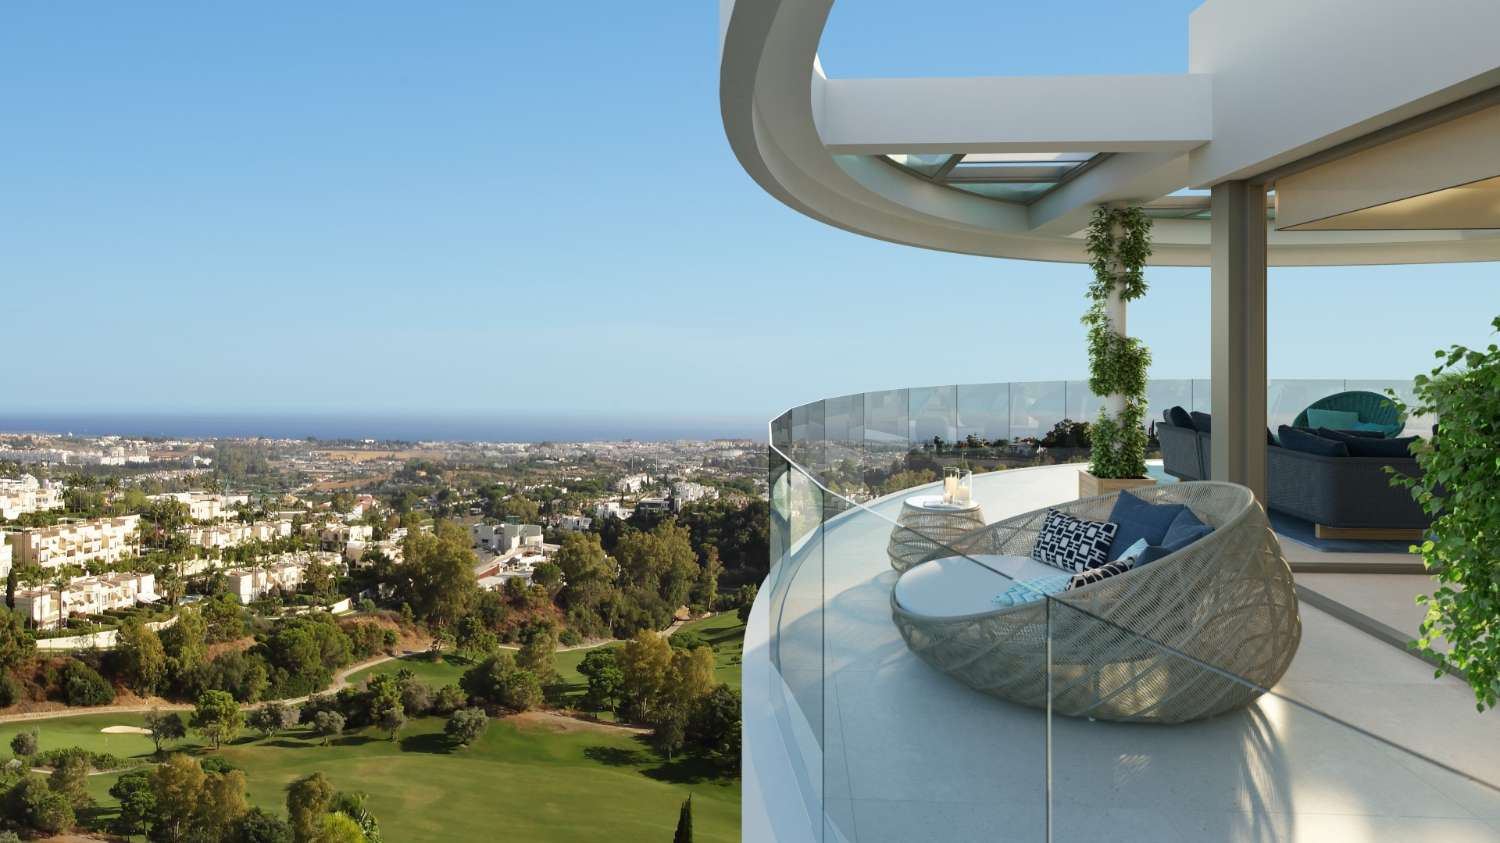 Exclusivas viviendas con vistas panorámicas al mar!